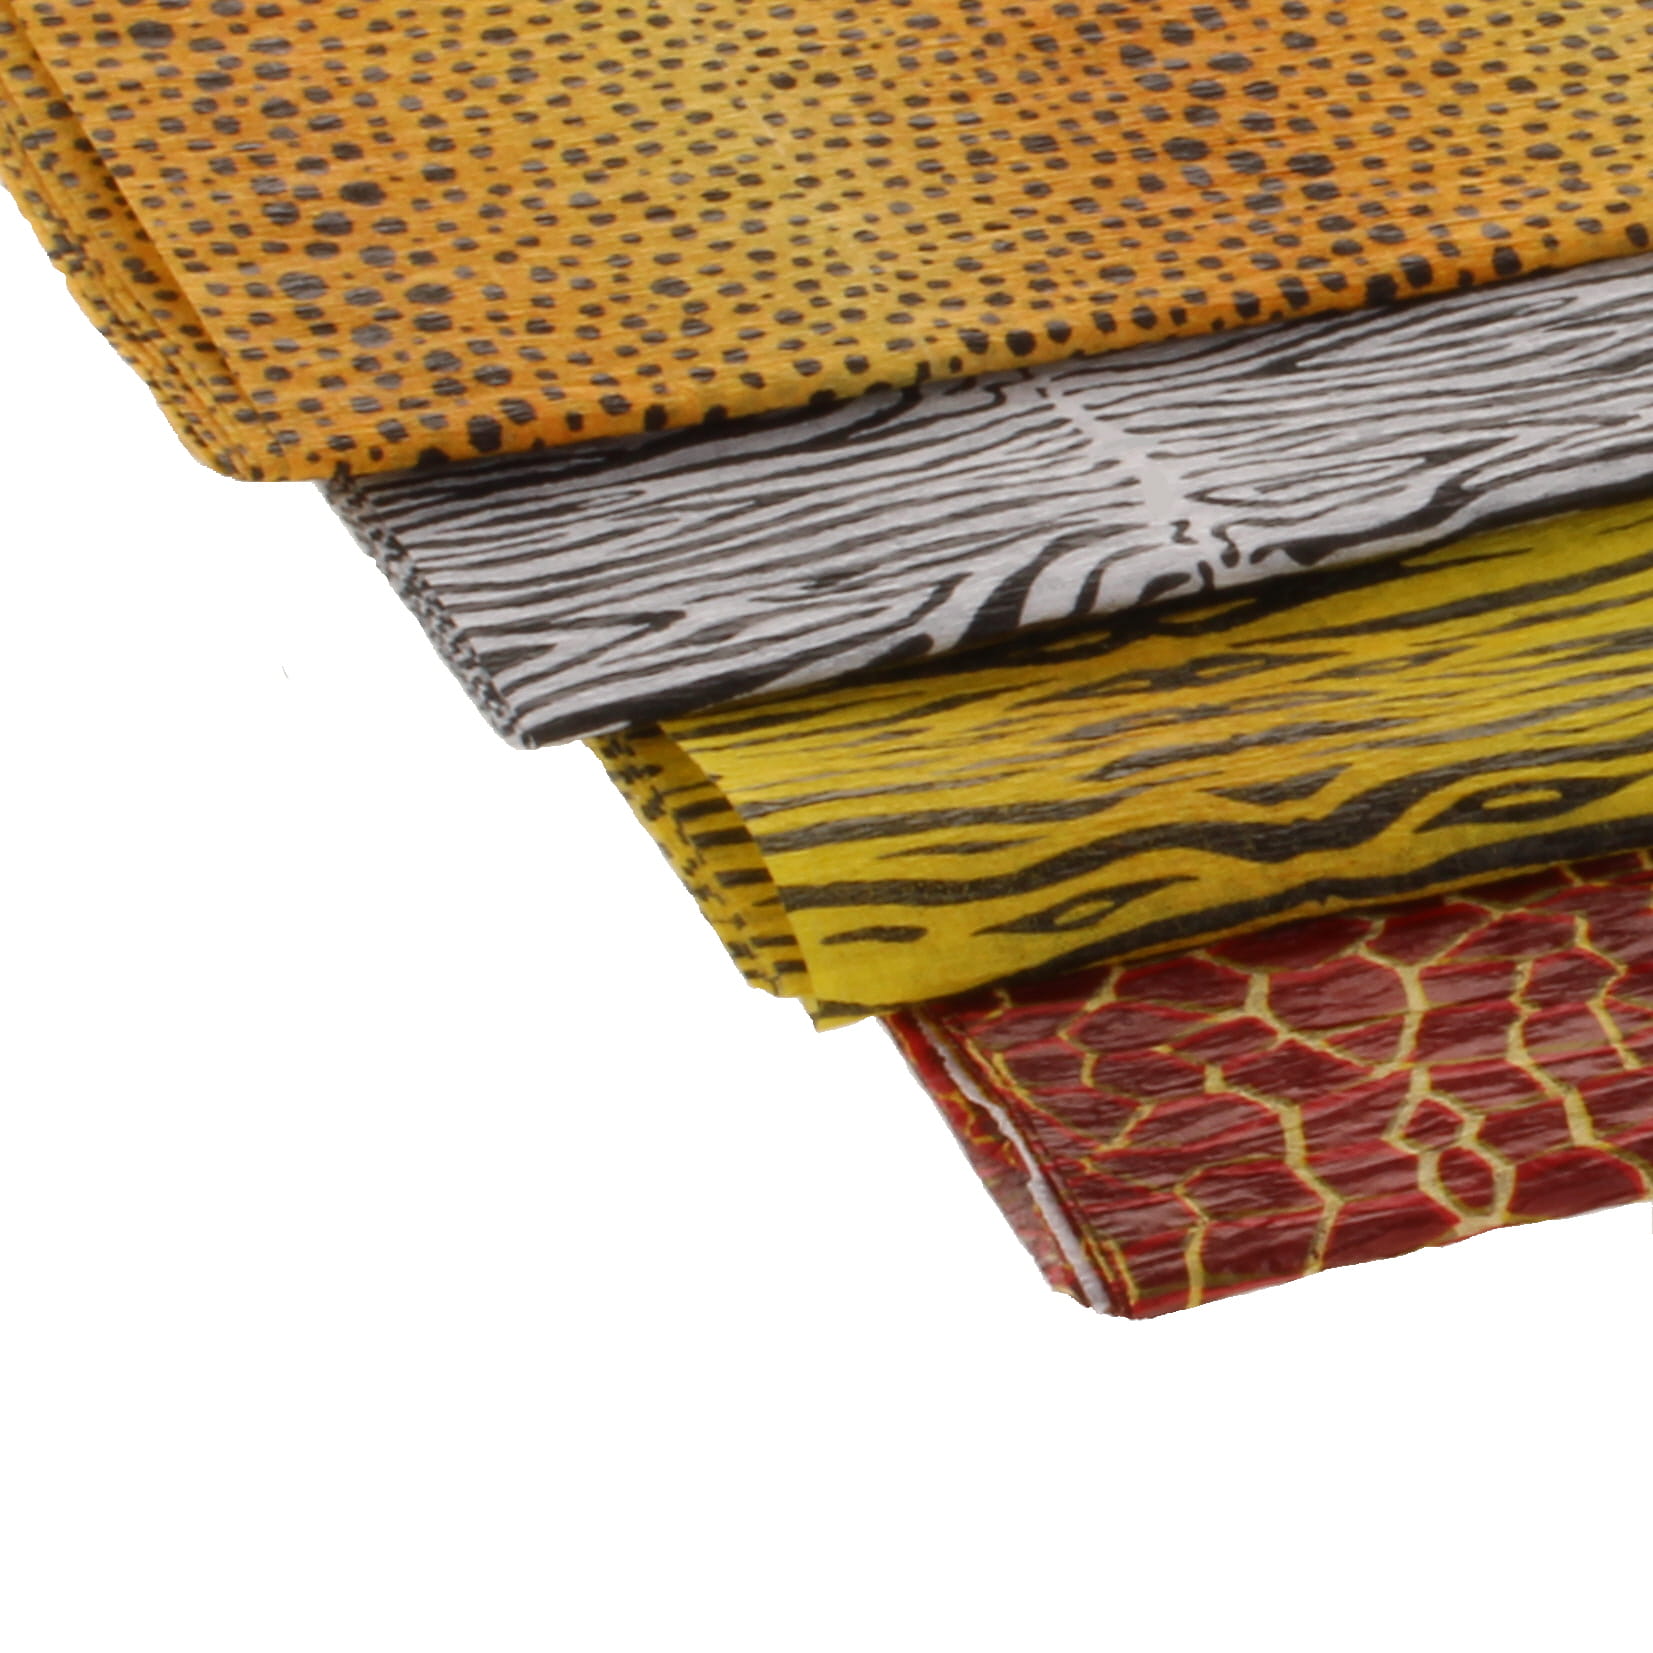 Crepe Paper Safari Designs - pack of 3 x 4